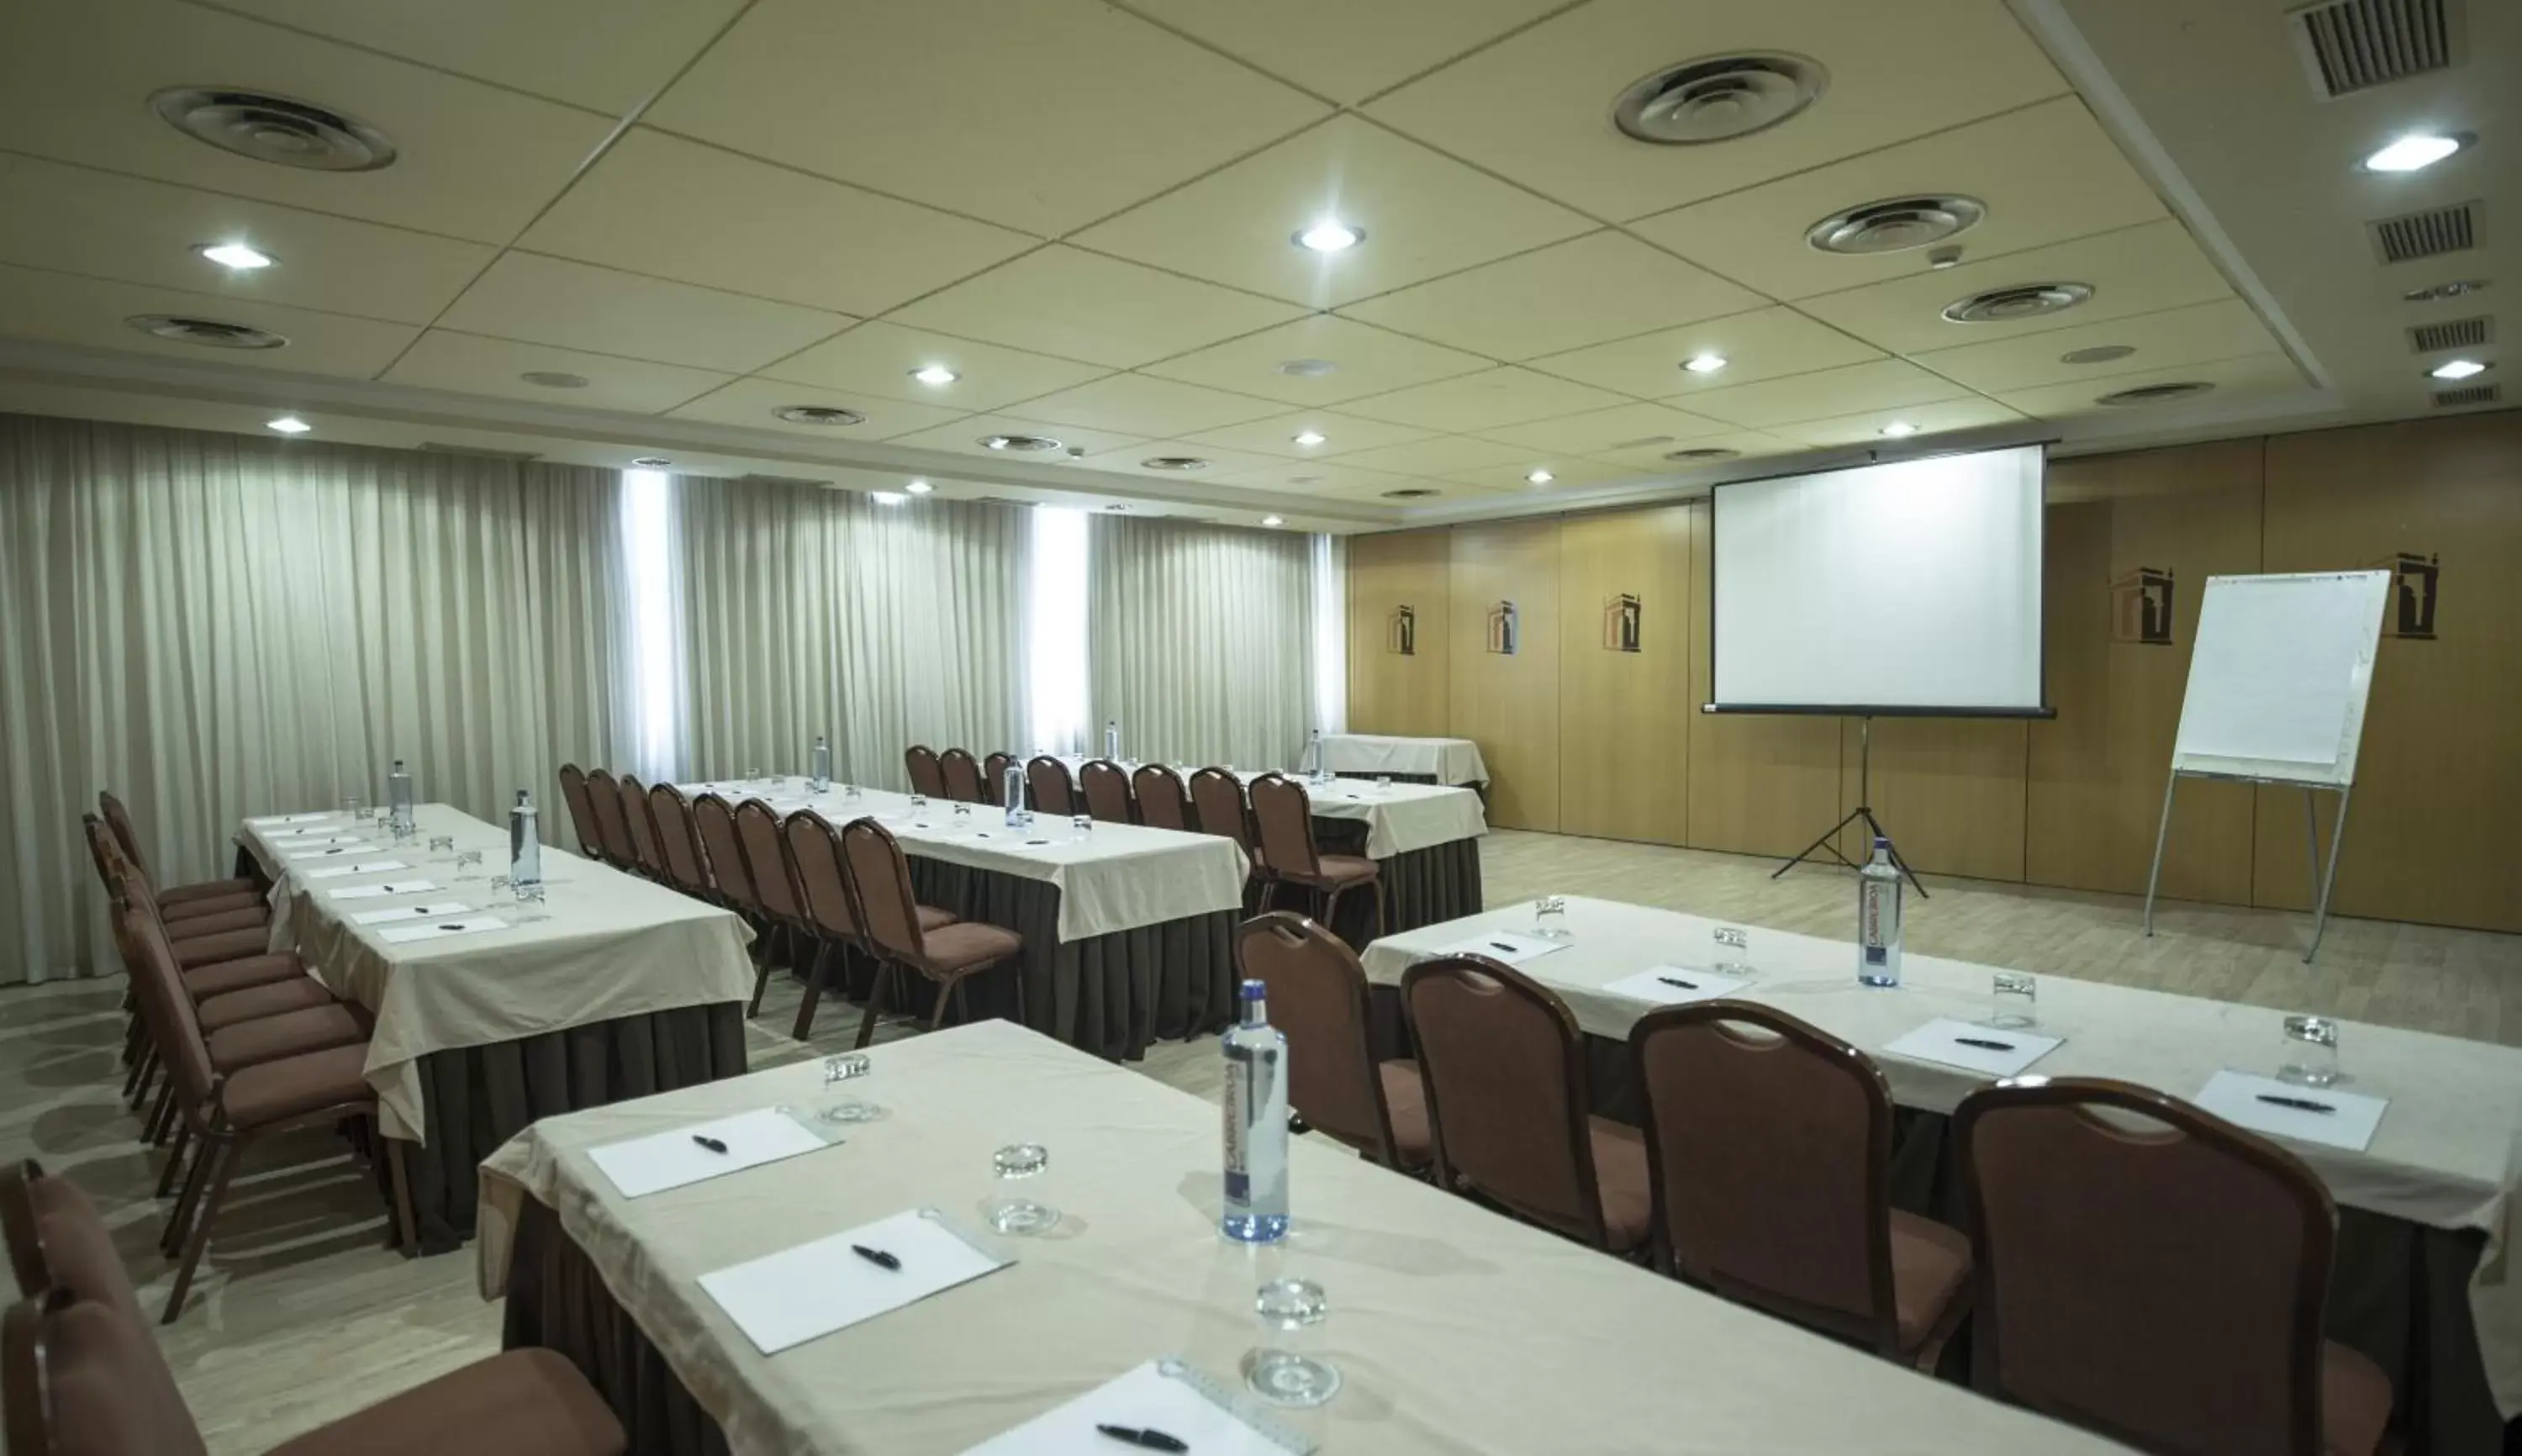 Meeting/conference room in Oca Puerta del Camino Hotel